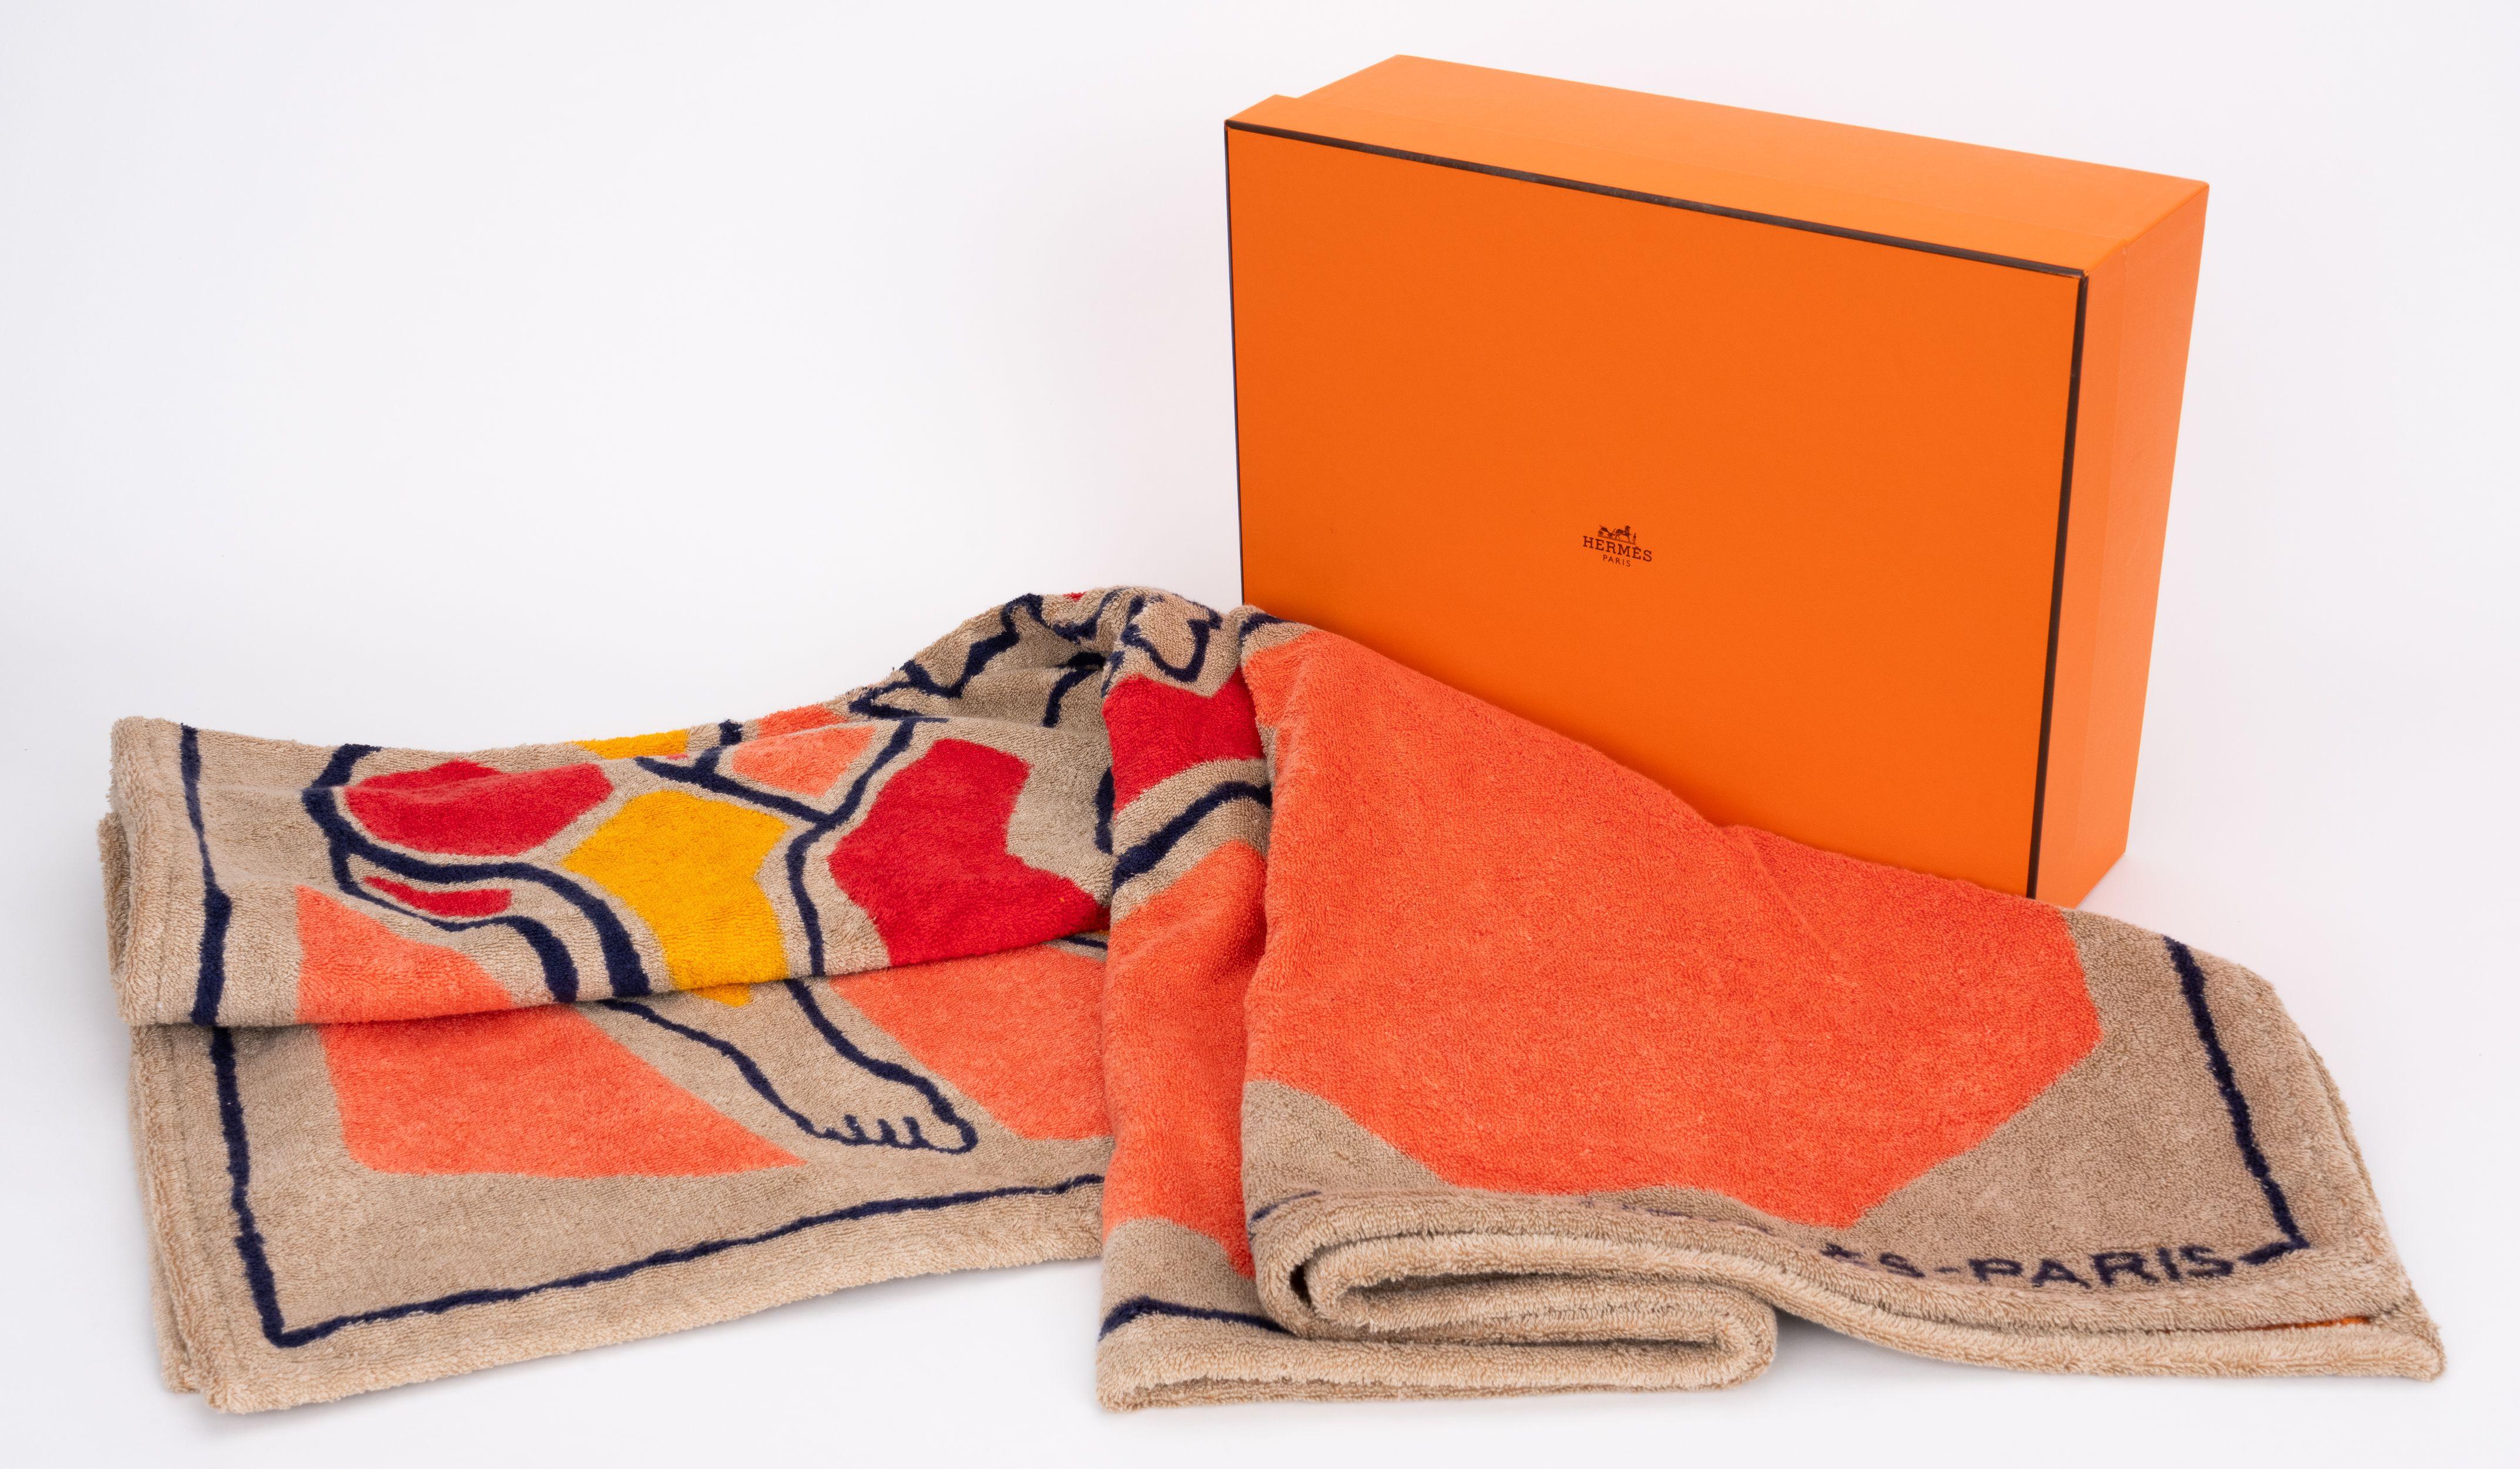 Hermès Strandtuch mit geometrischem Pferde- und Figurenmuster. Farbkombination aus Orange, Taupe und Schwarz. 100% Baumwolle. Kommt mit Originalverpackung.